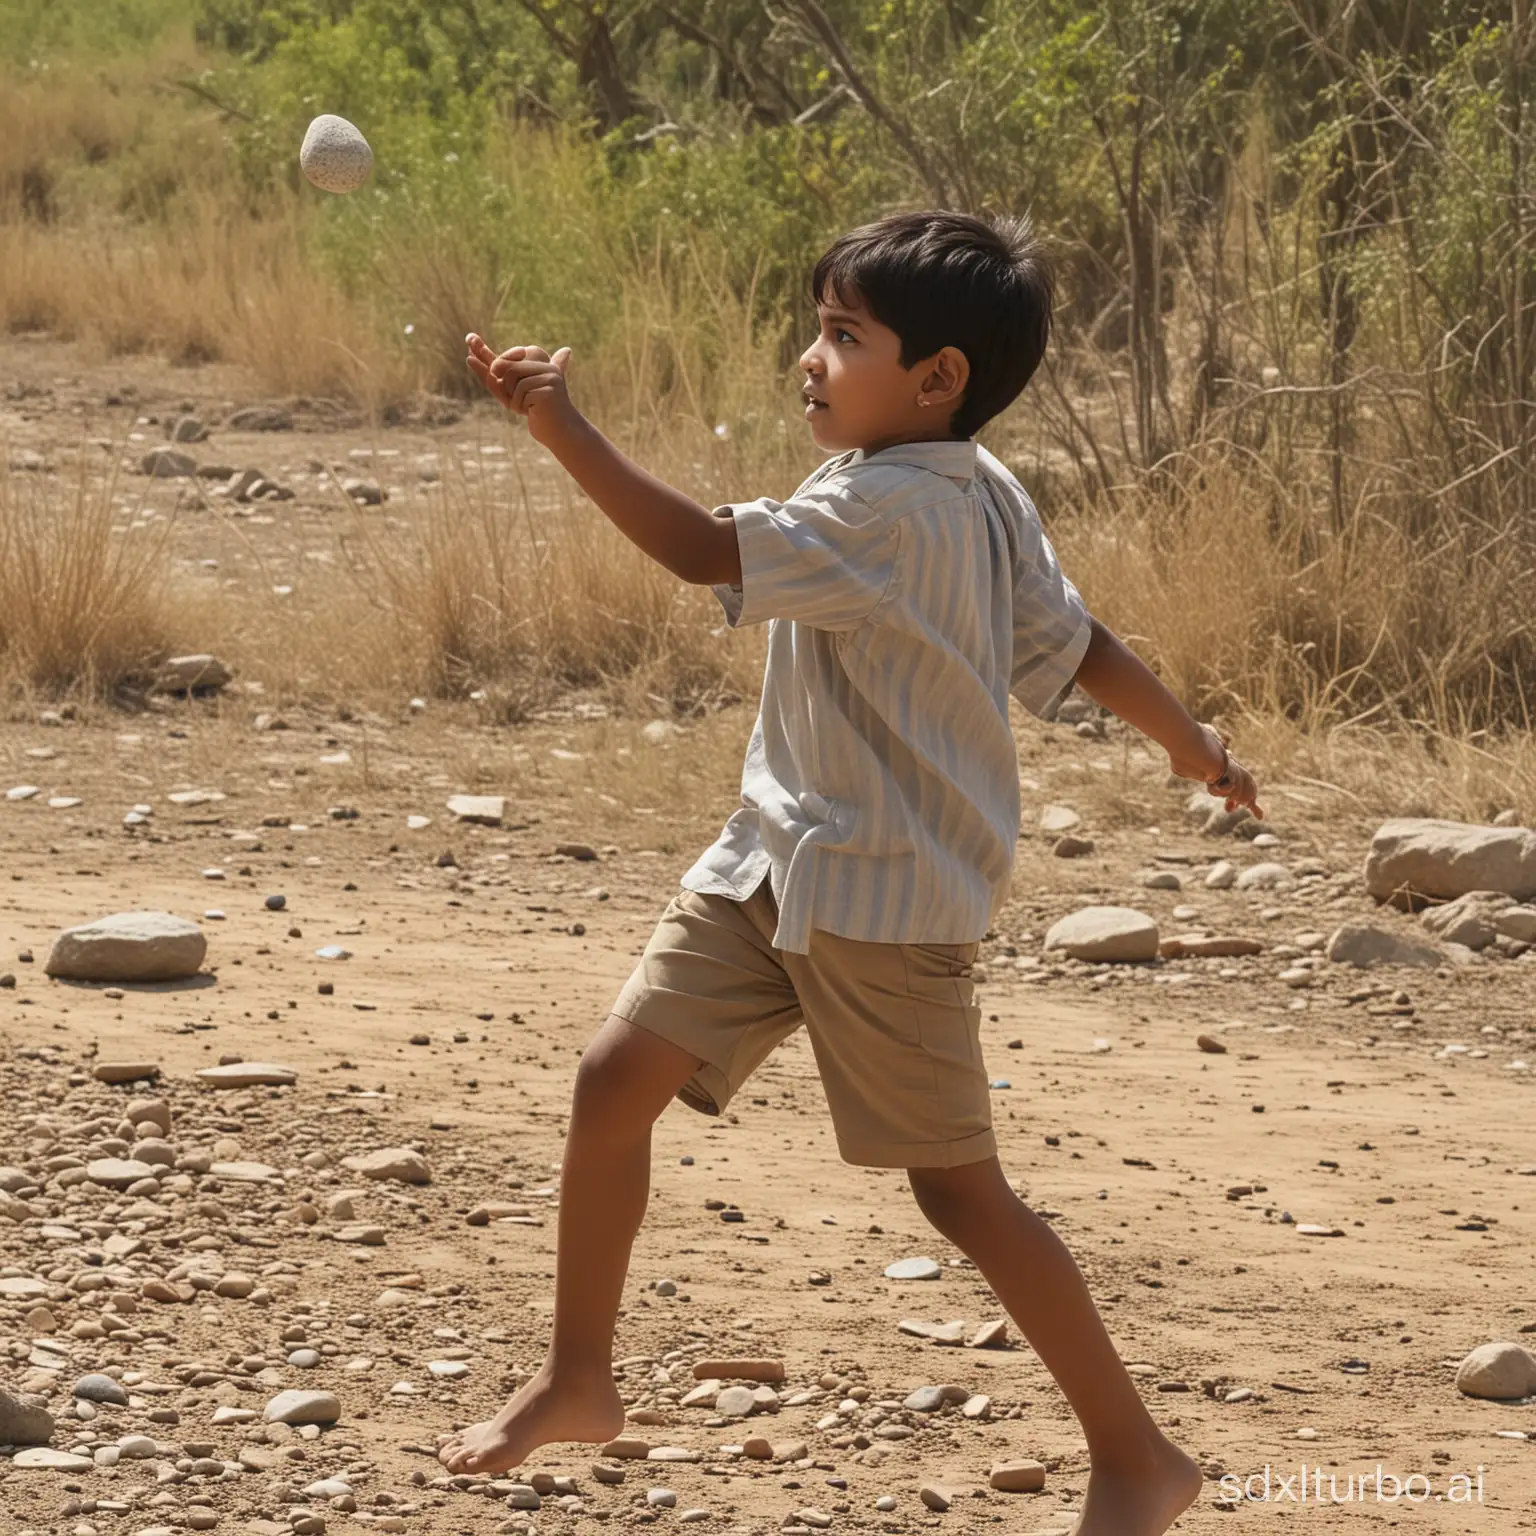 Indian Boy throwing stone